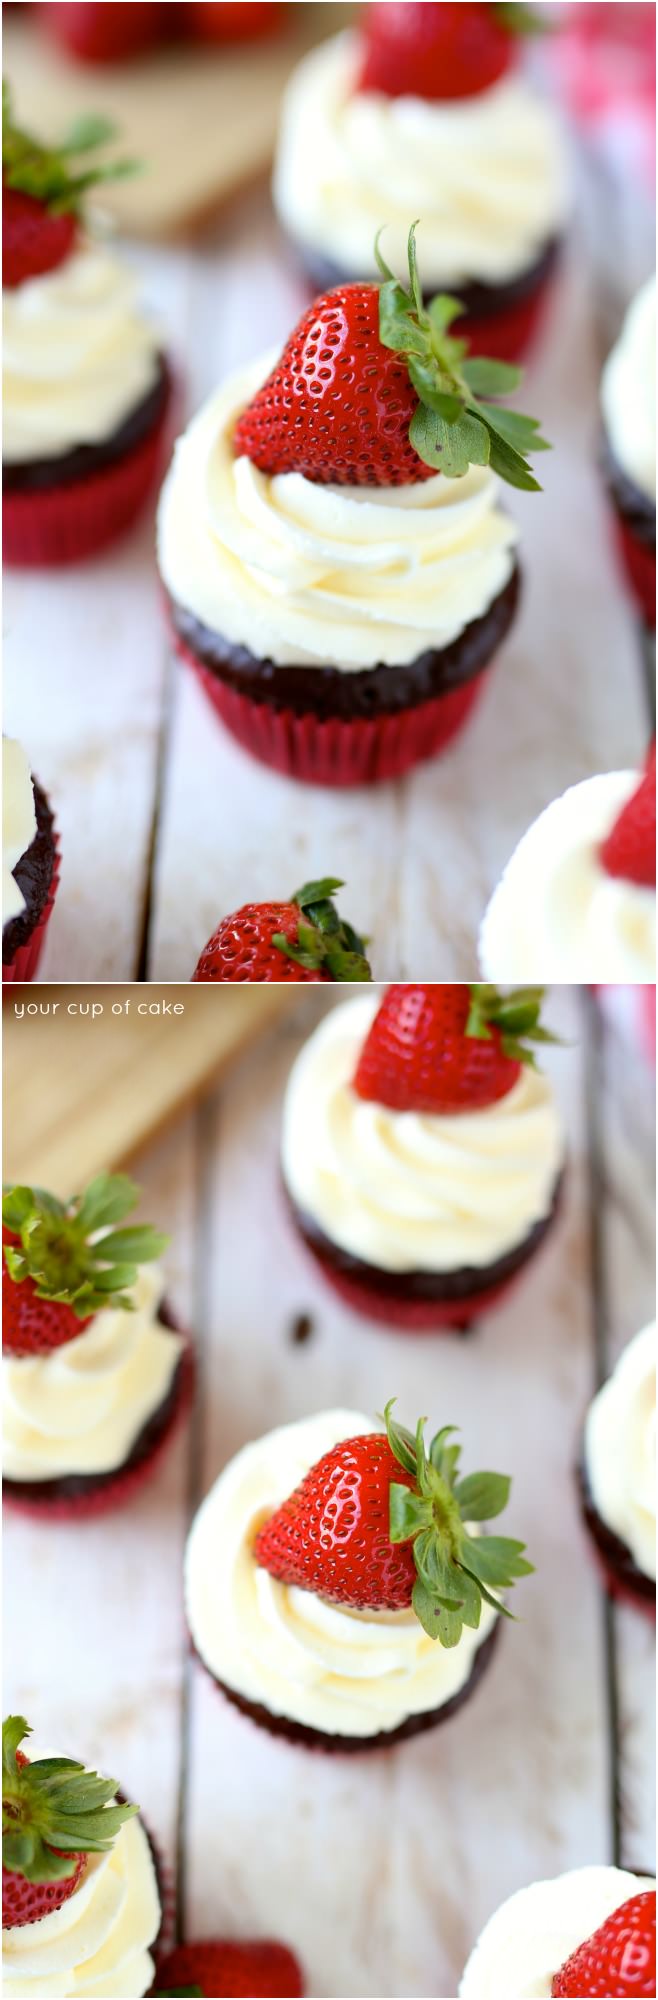 Chocolate Strawberry Cheesecake Cupcakes with chocolate ganache, yum!  My new favorite cupcakes!